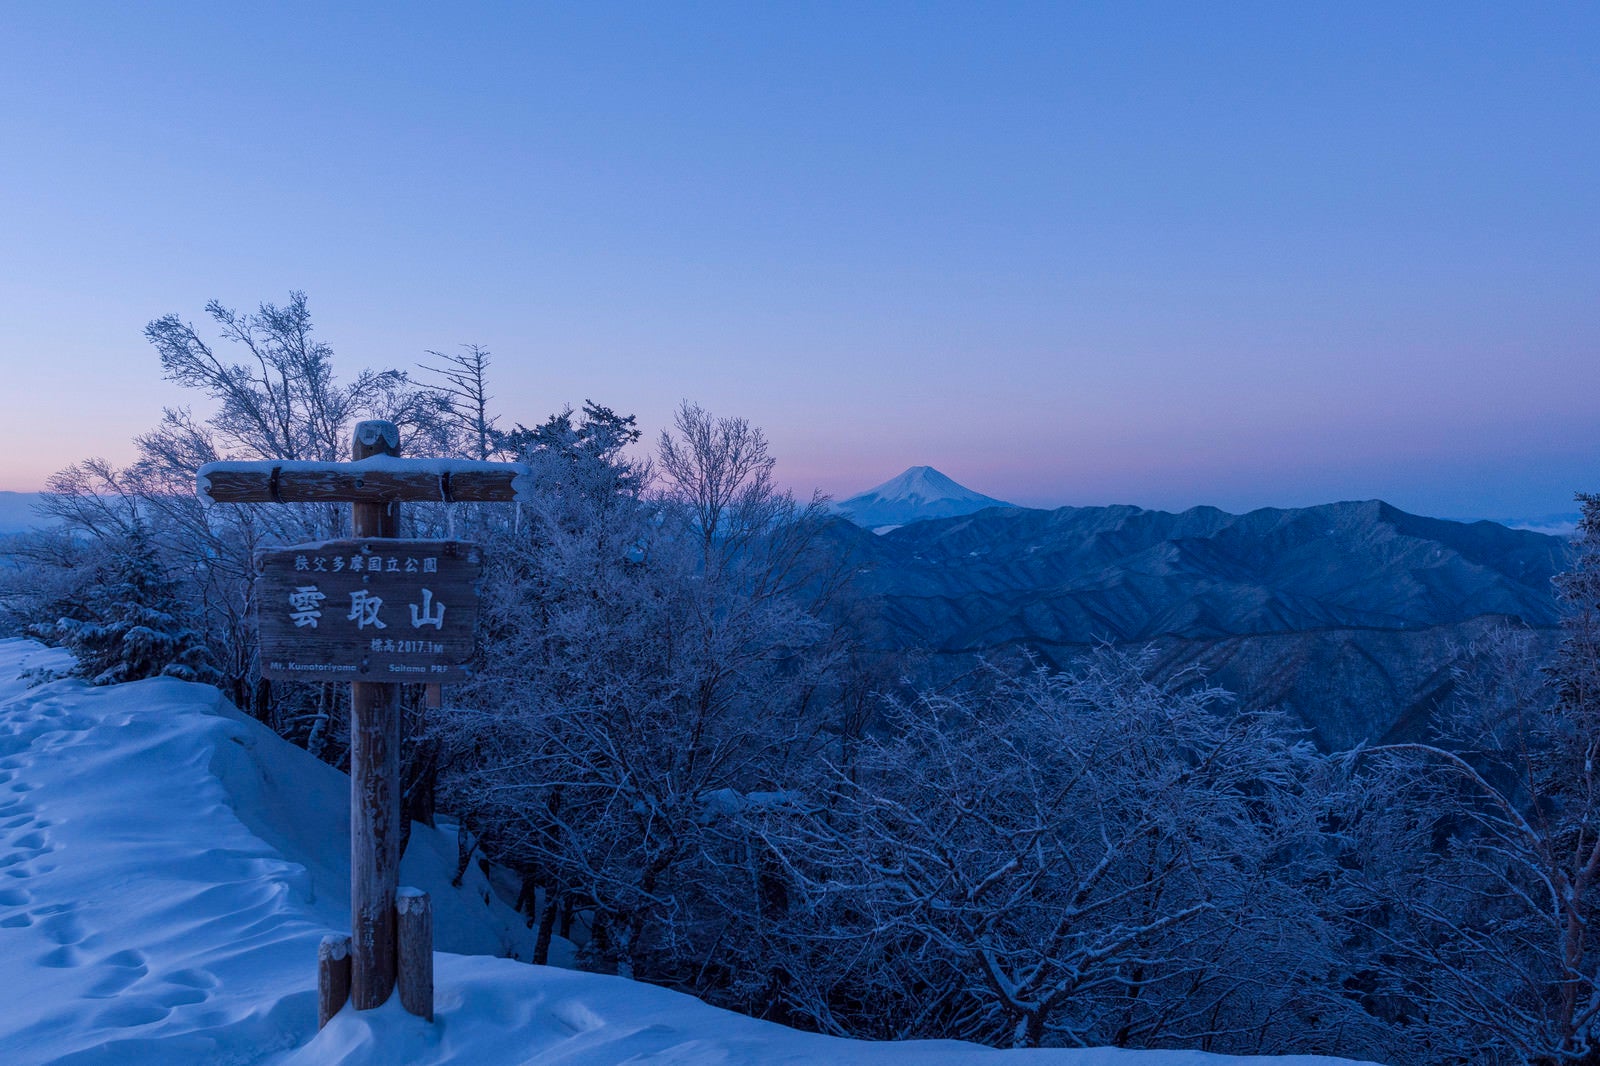 「夜明けの雲取山山頂標と富士山」の写真